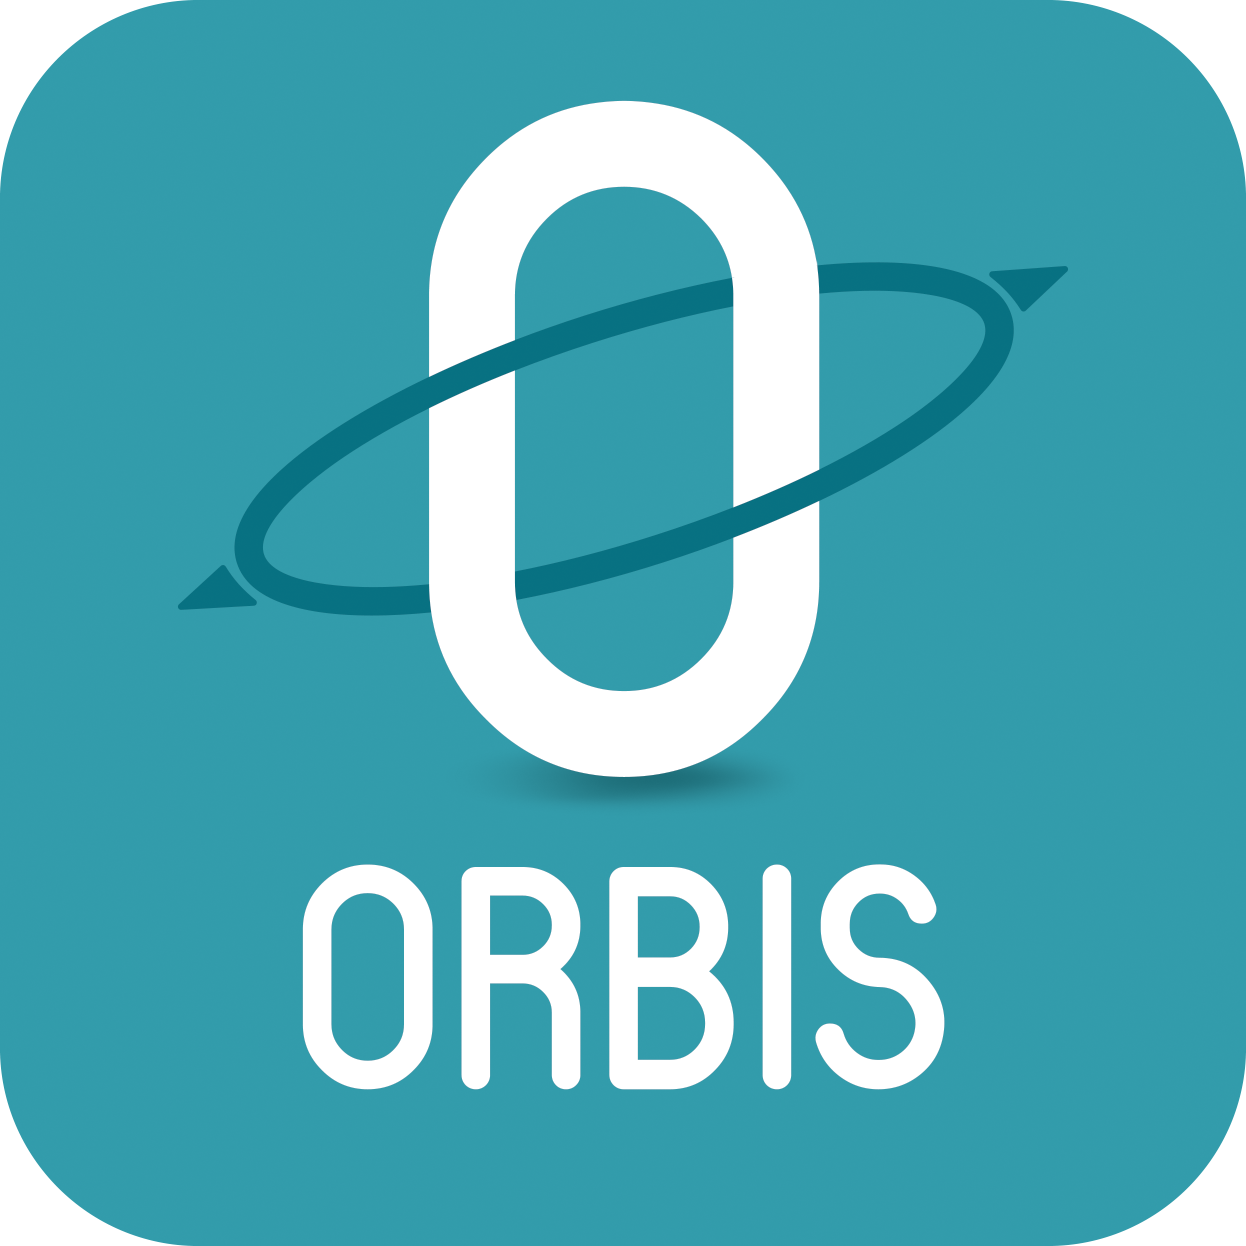 Orbis Consulting LLC